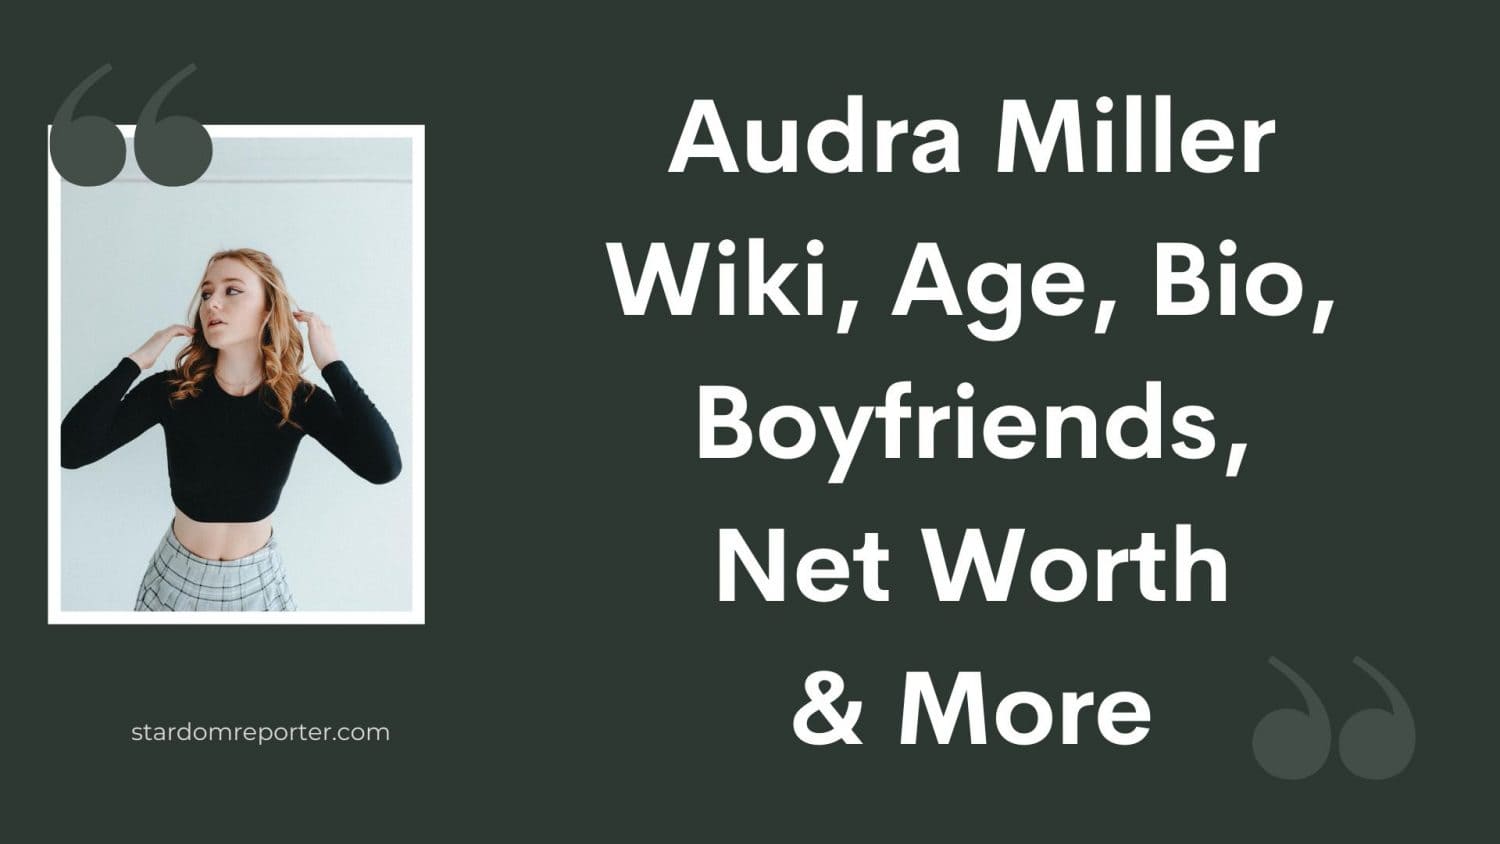 Audra Miller Wiki, Age, Bio, Boyfriends, Net Worth & More - 29